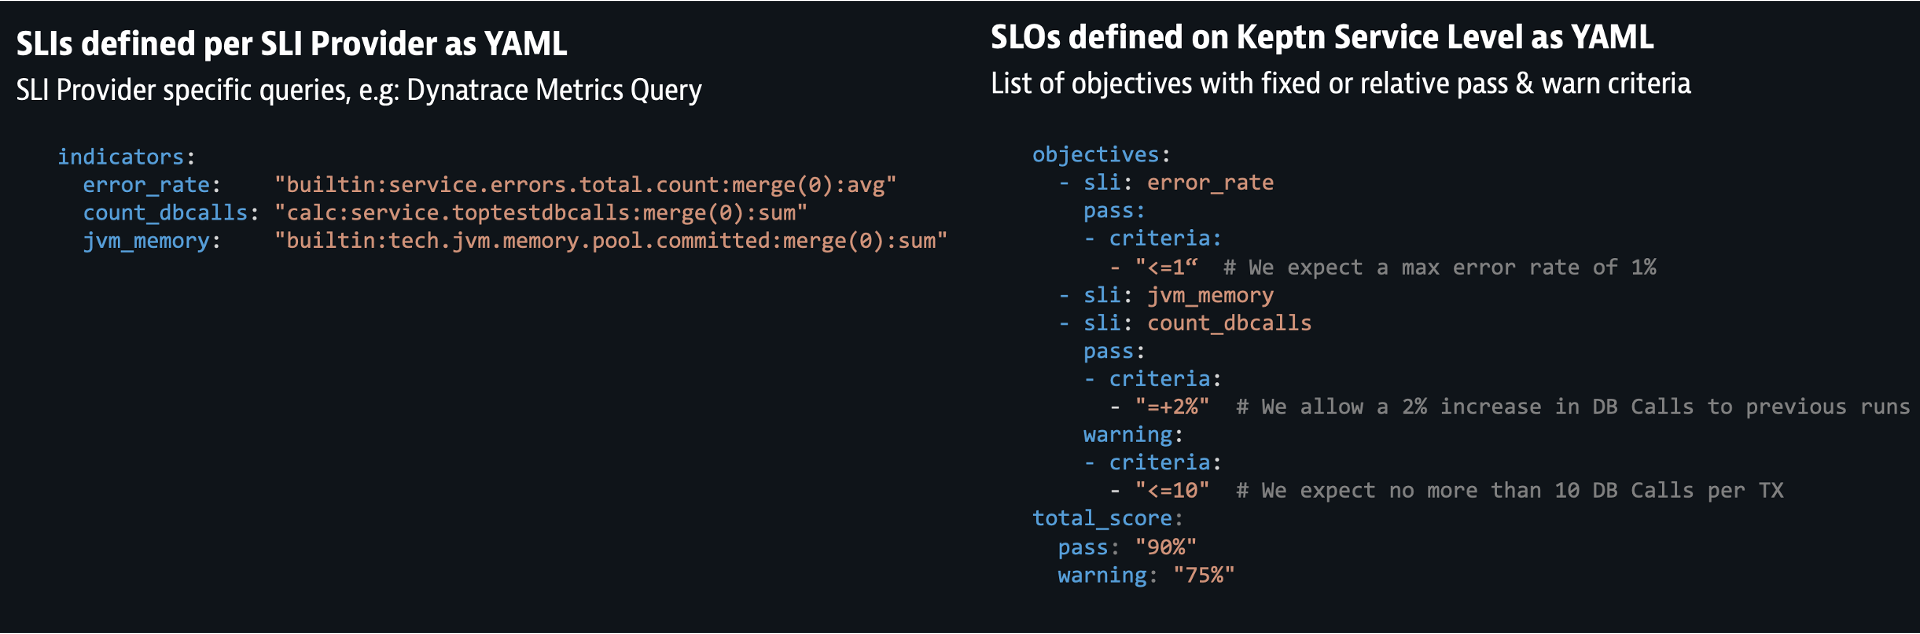 SLO/SLI configuration file example